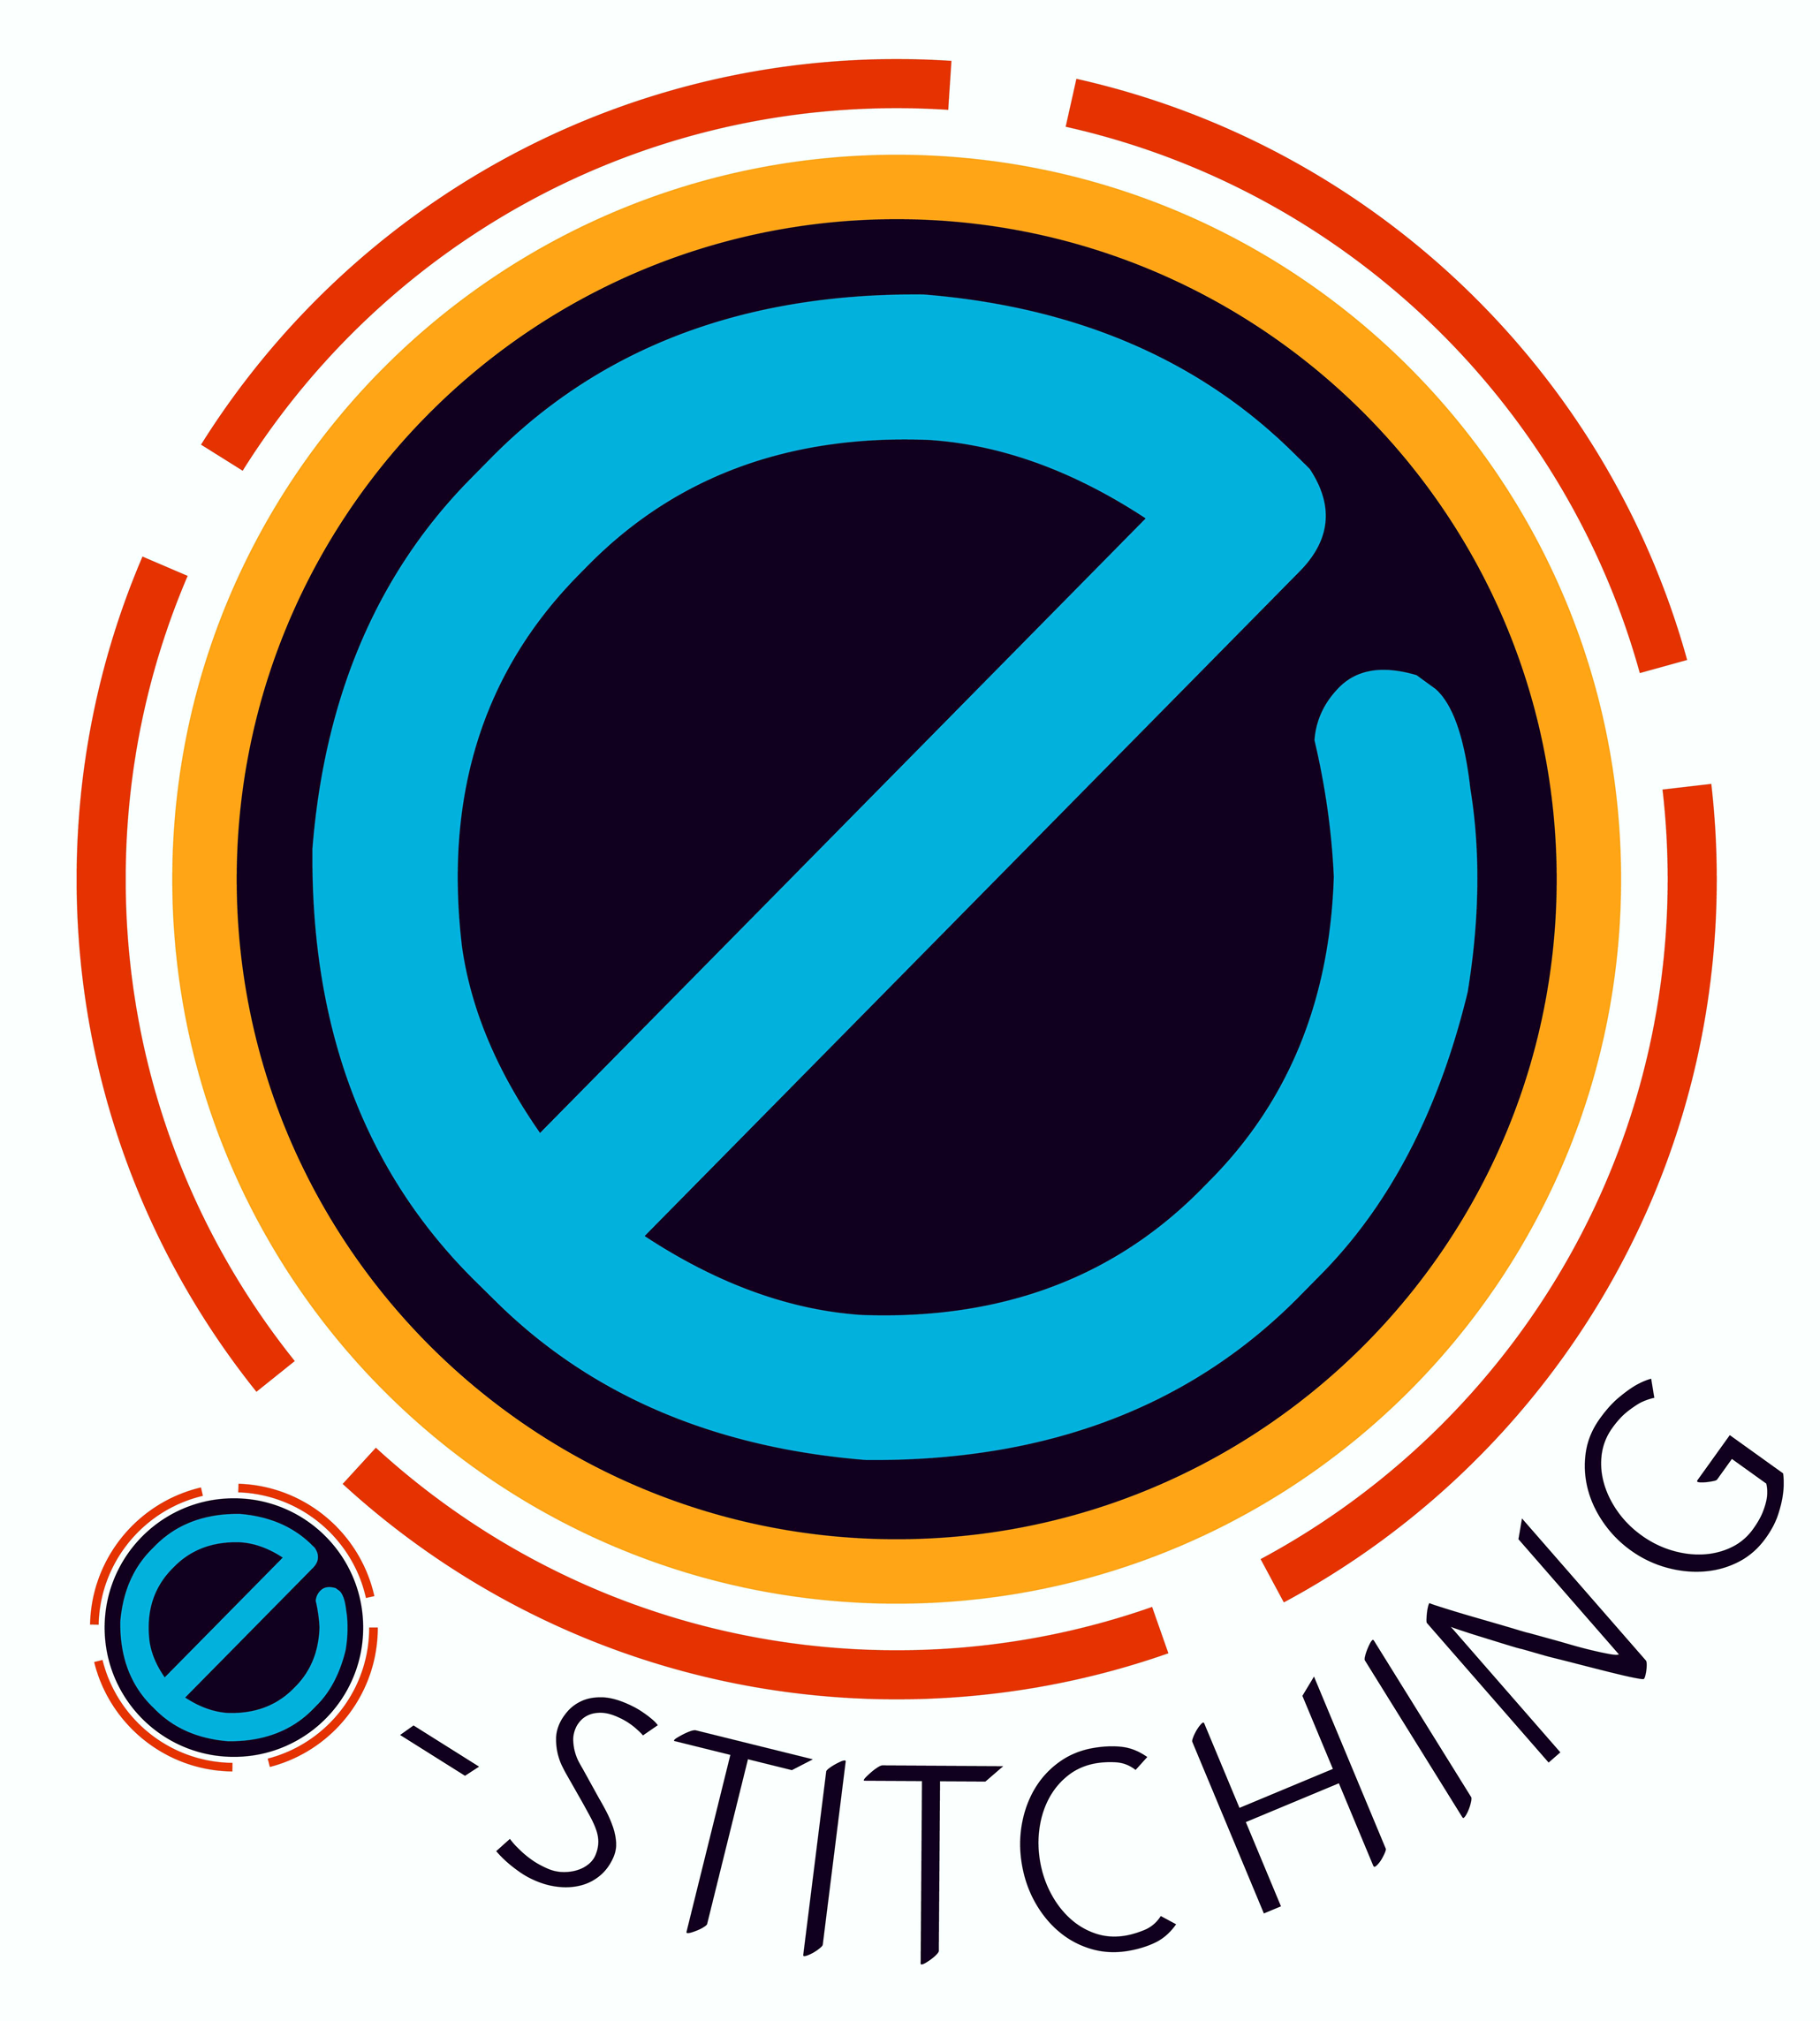 E-Stitching